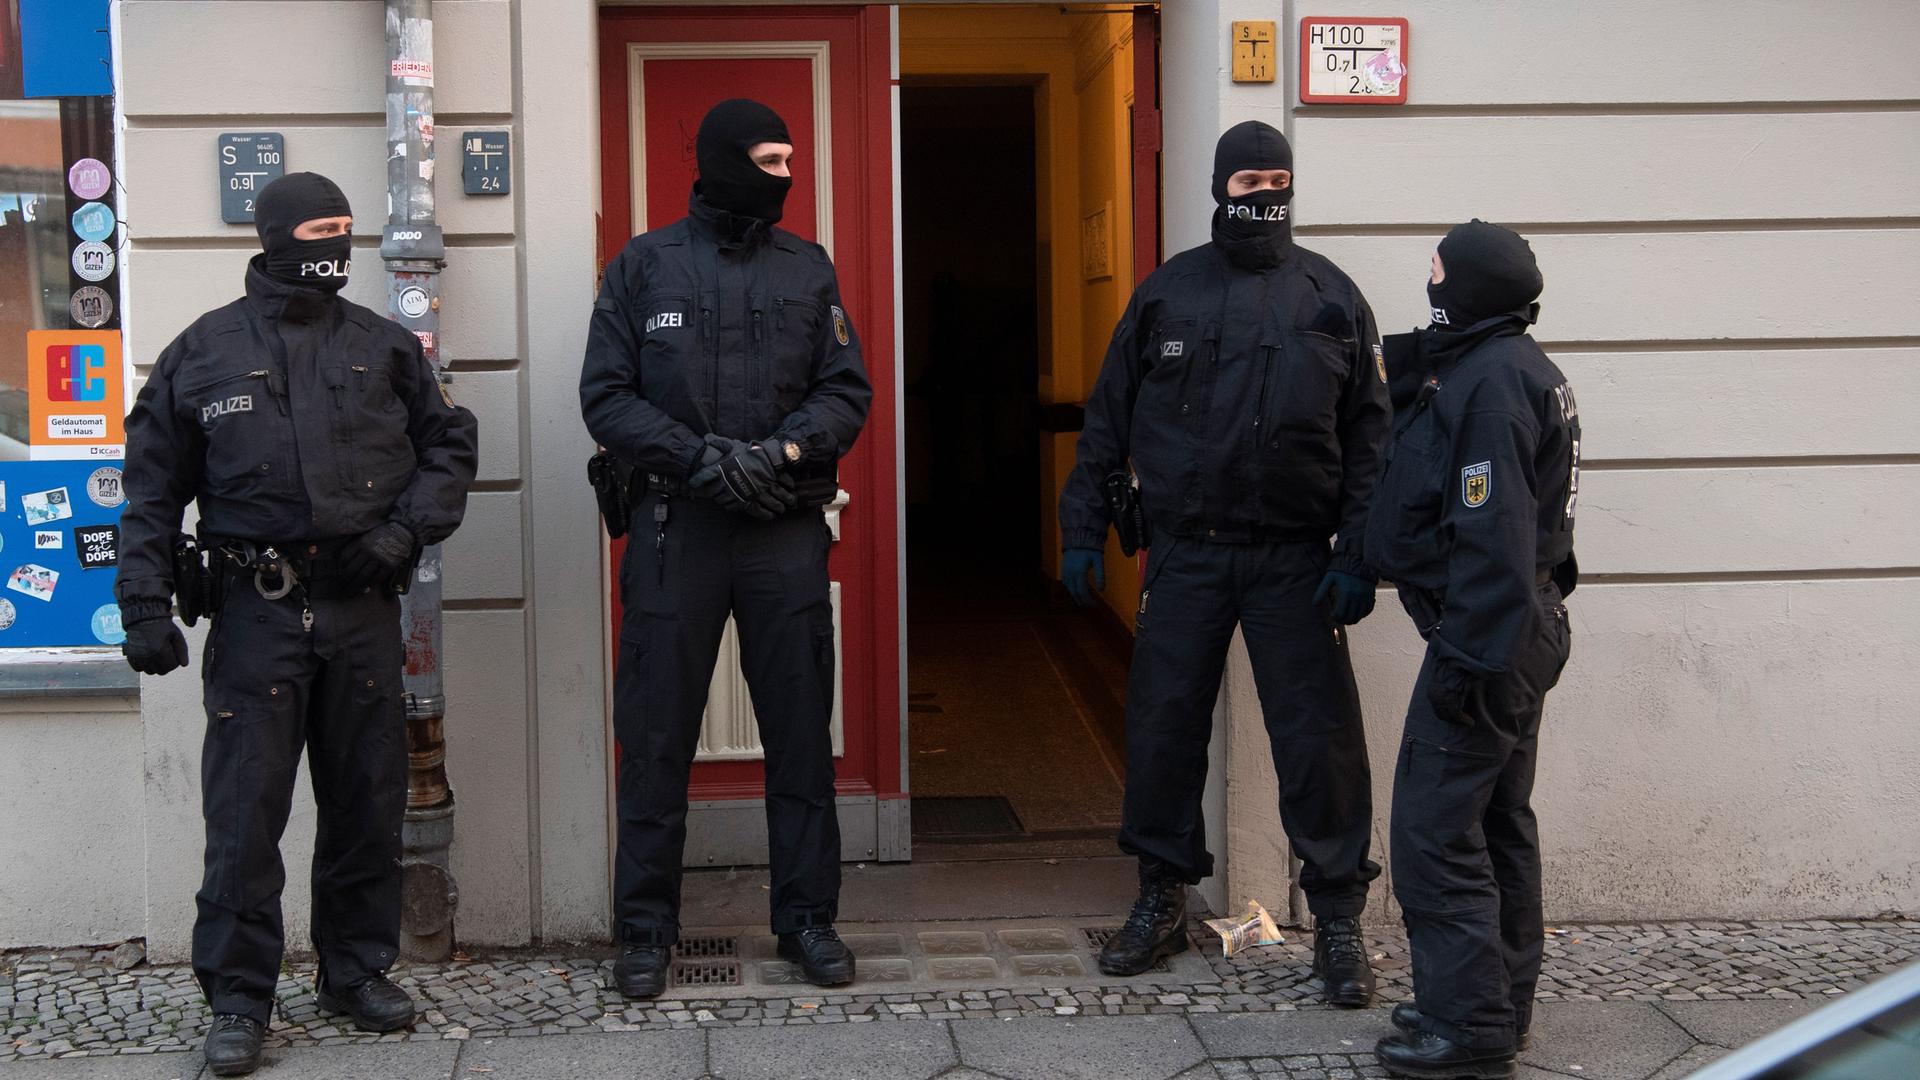 Berlin: Polizisten stehen bei einer Razzia an einer Eingangstür von einem Gebäude in Berlin. Mit einer großen Razzia ist die Polizei in Berlin und Sachsen-Anhalt gegen eine Bande mutmaßlicher Schleuser vorgegangen.